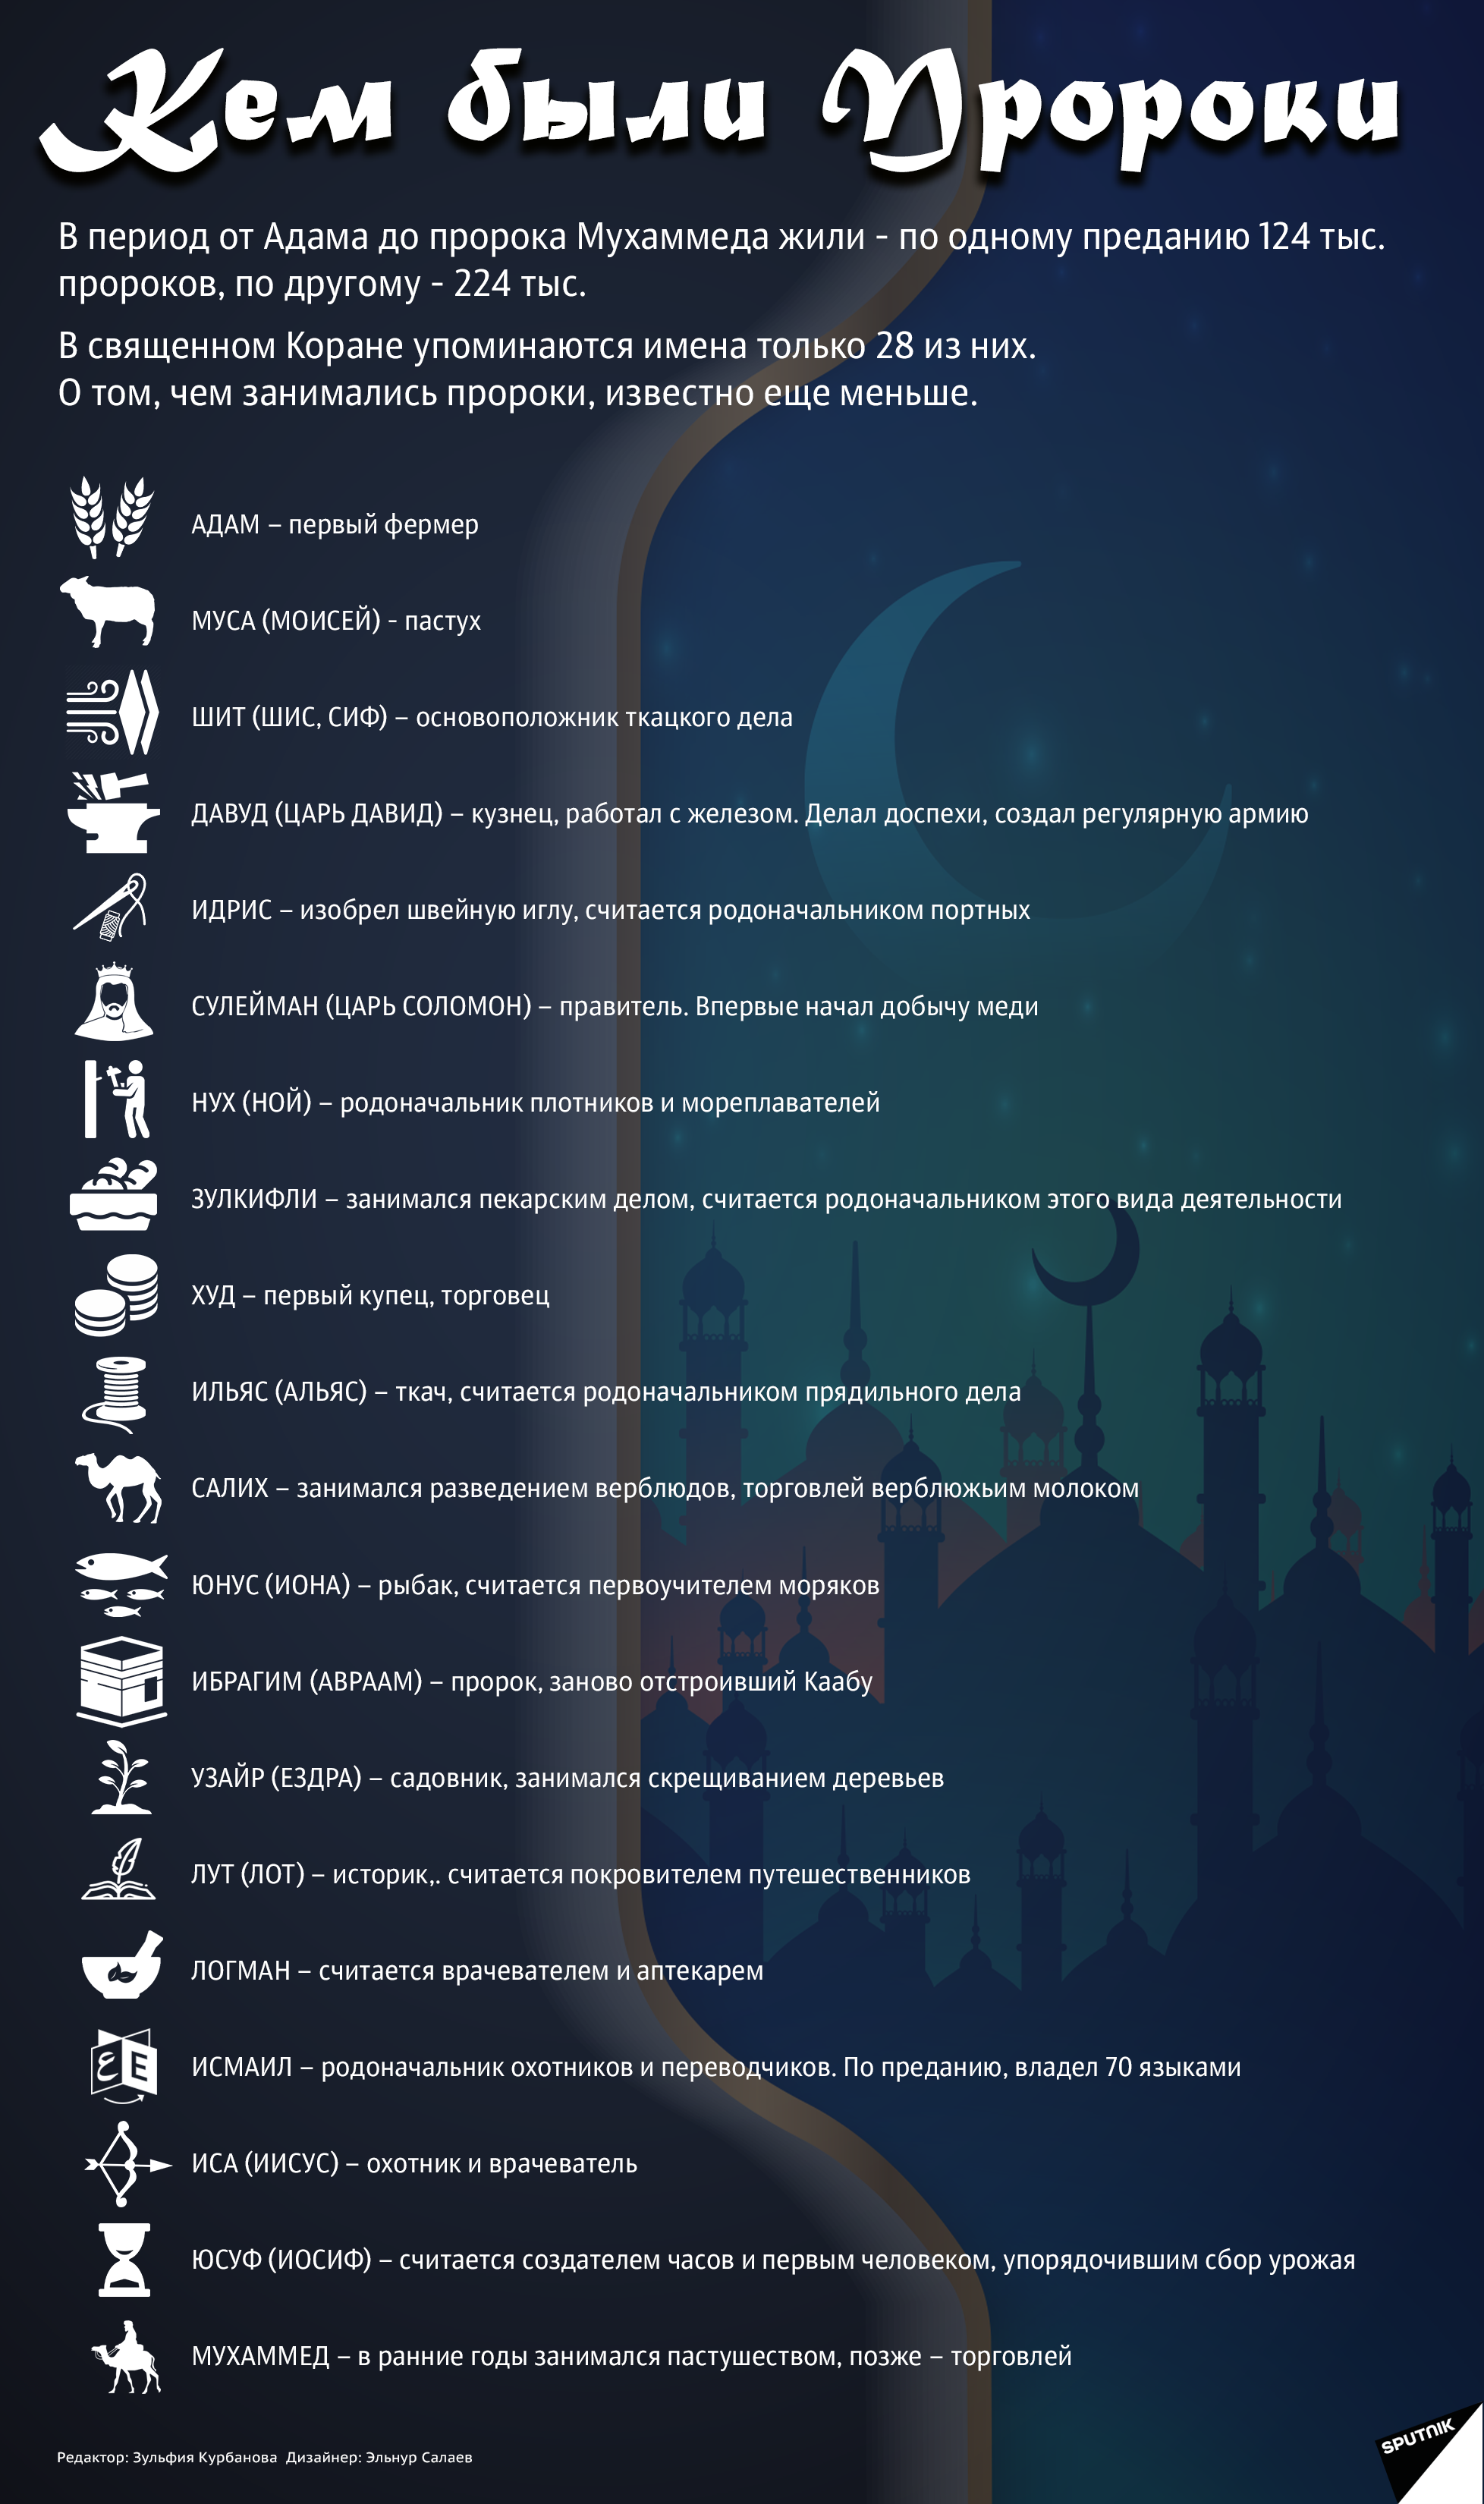 инфографика - Кем были пророки - Sputnik Узбекистан